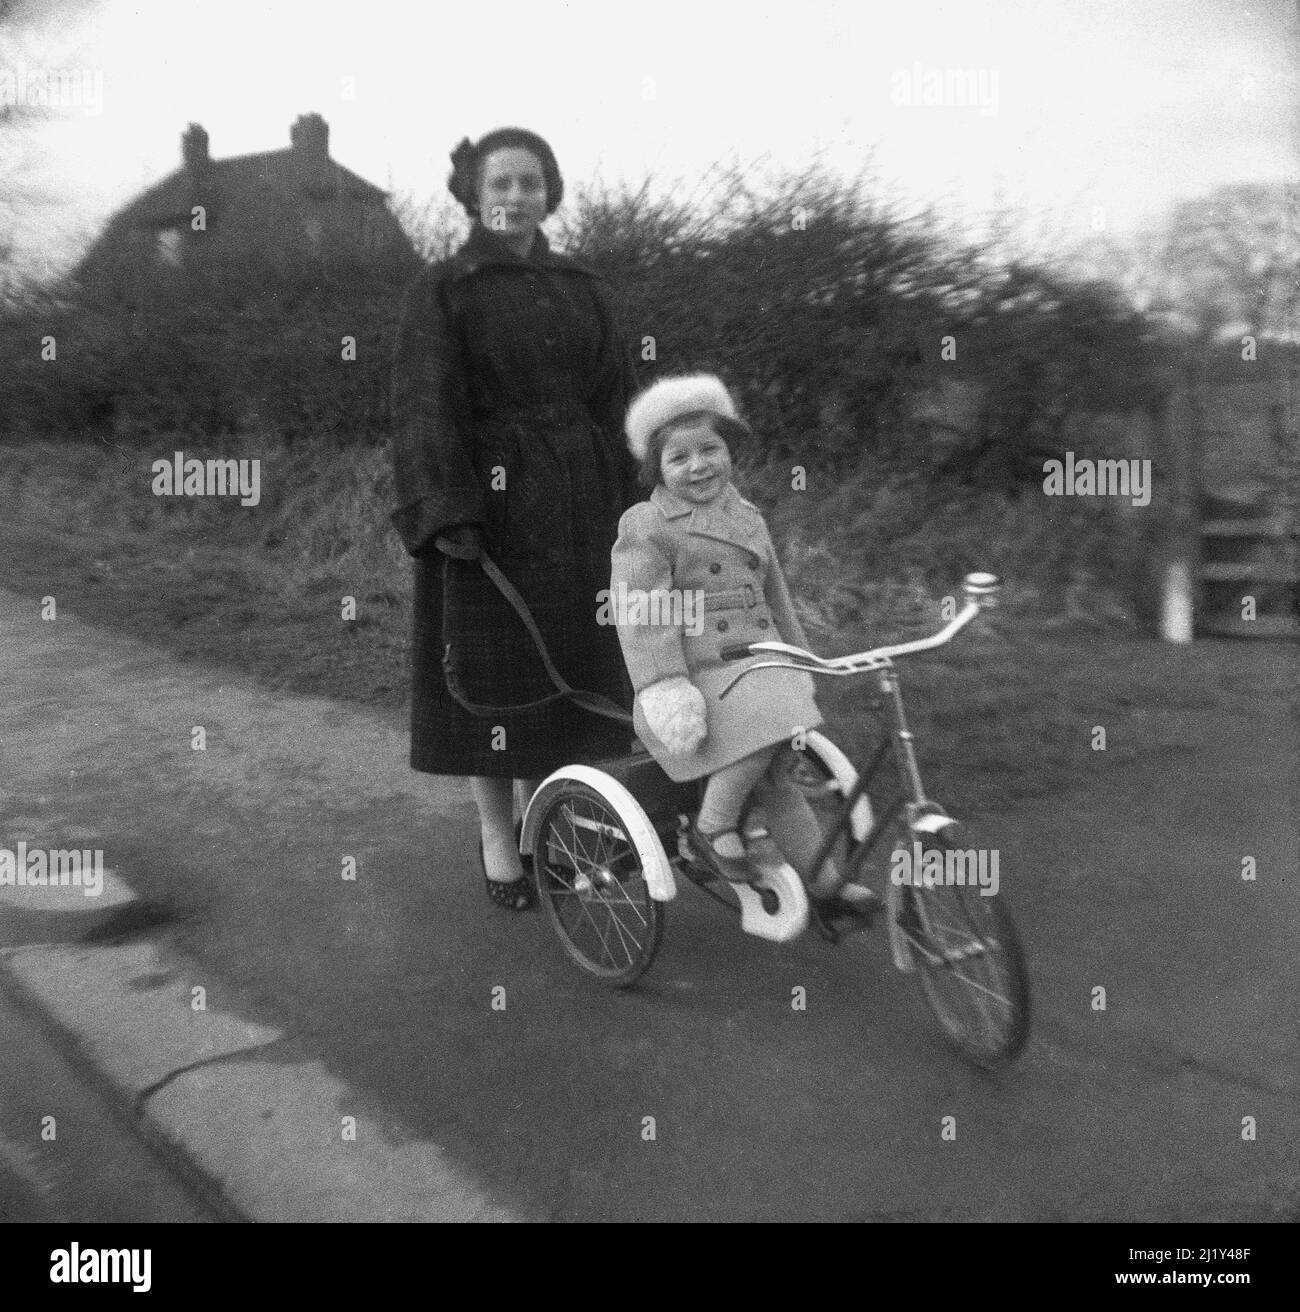 1950s, historique, à l'extérieur sur un trottoir de campagne, une mère avec sa fille assise sur son tricycle, Angleterre, Royaume-Uni. La dame tient une plomb attachée à l'arrière du tricycle, qui a été fait par TRIANG, un important fabricant britannique de jouets à base de métal pour enfants dans cette époque. Banque D'Images